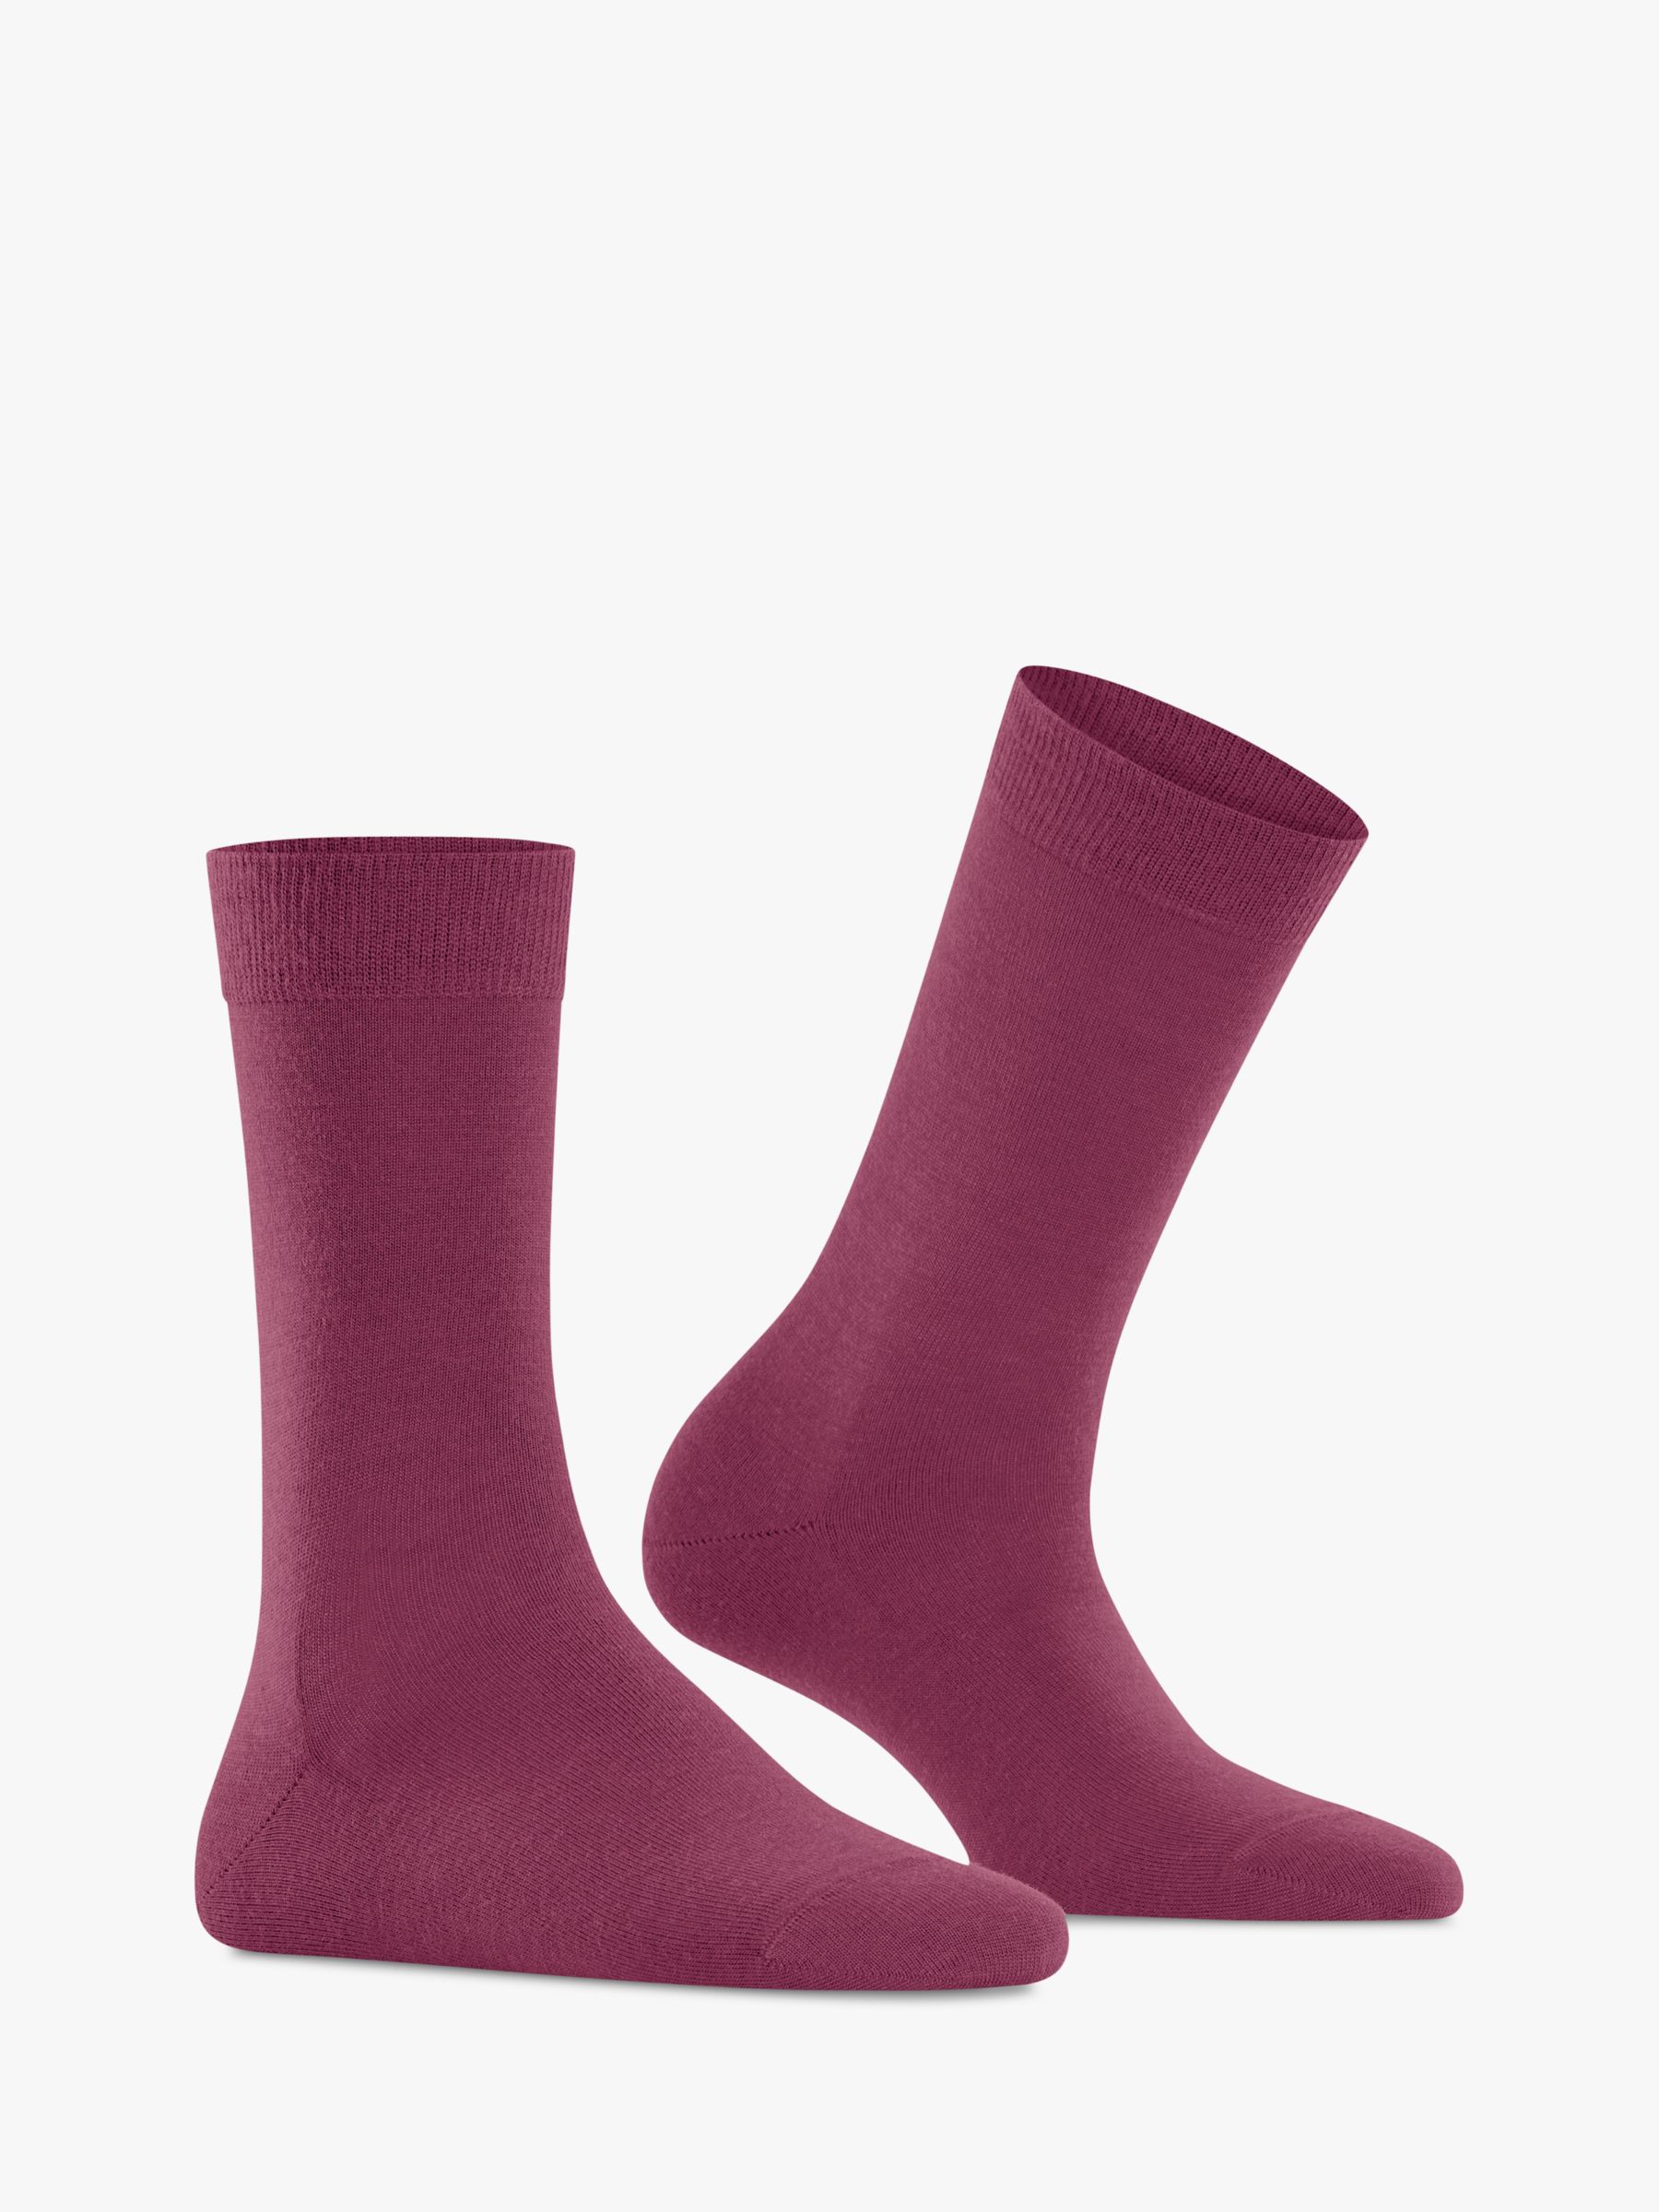 Women's Falke Soft Merino Socks